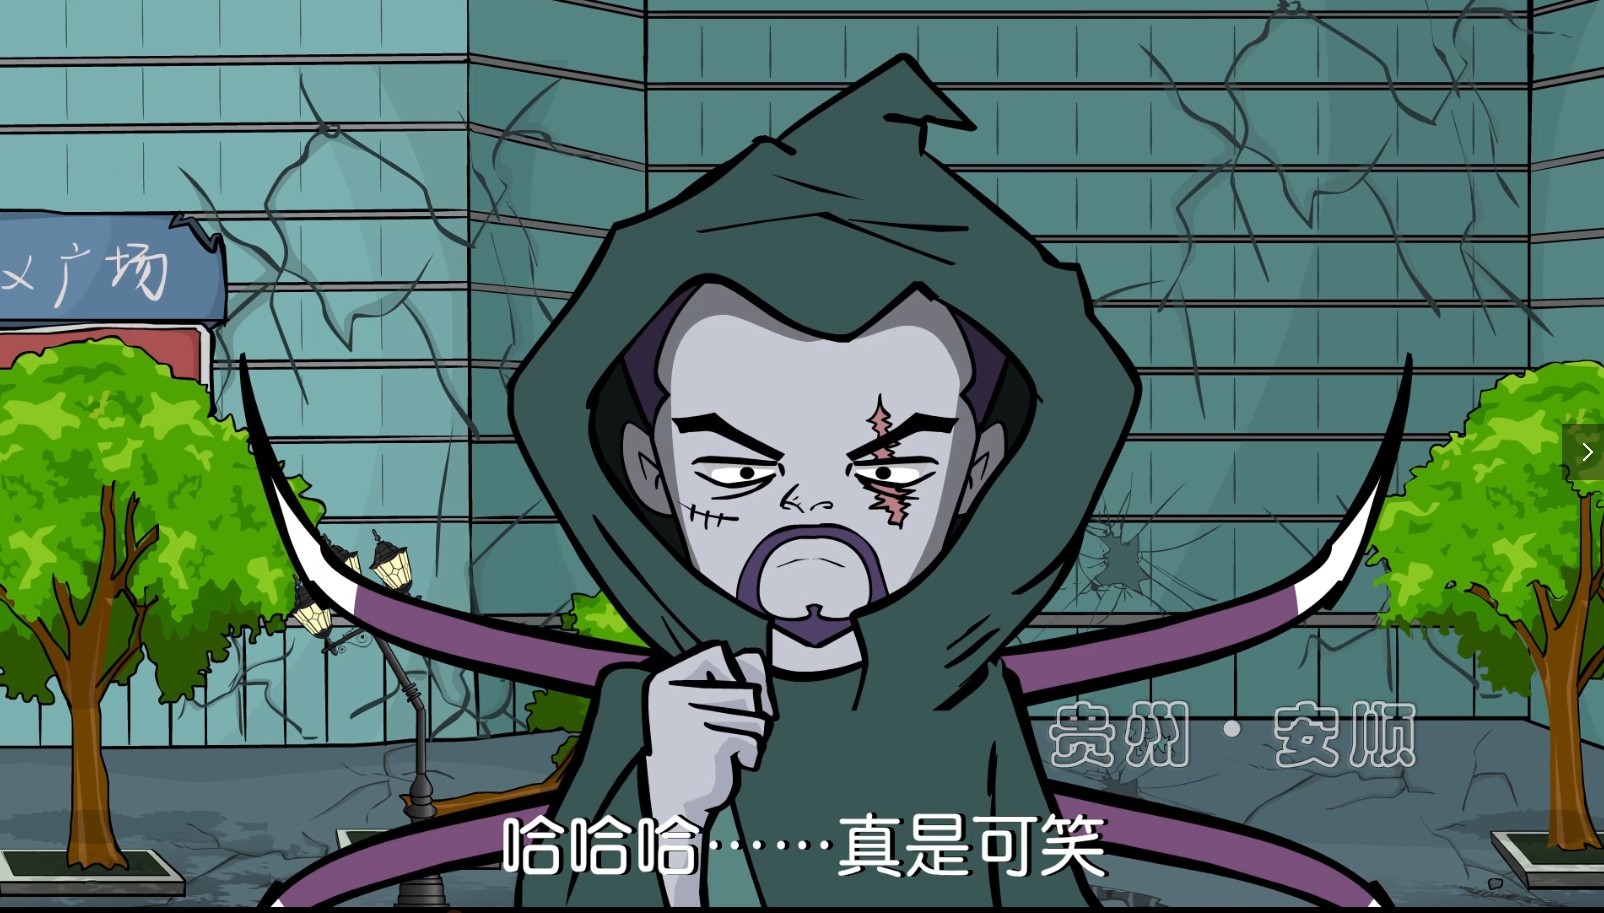 【全国禁毒宣传】禁毒系列宣传动画第9集|动漫|动画片